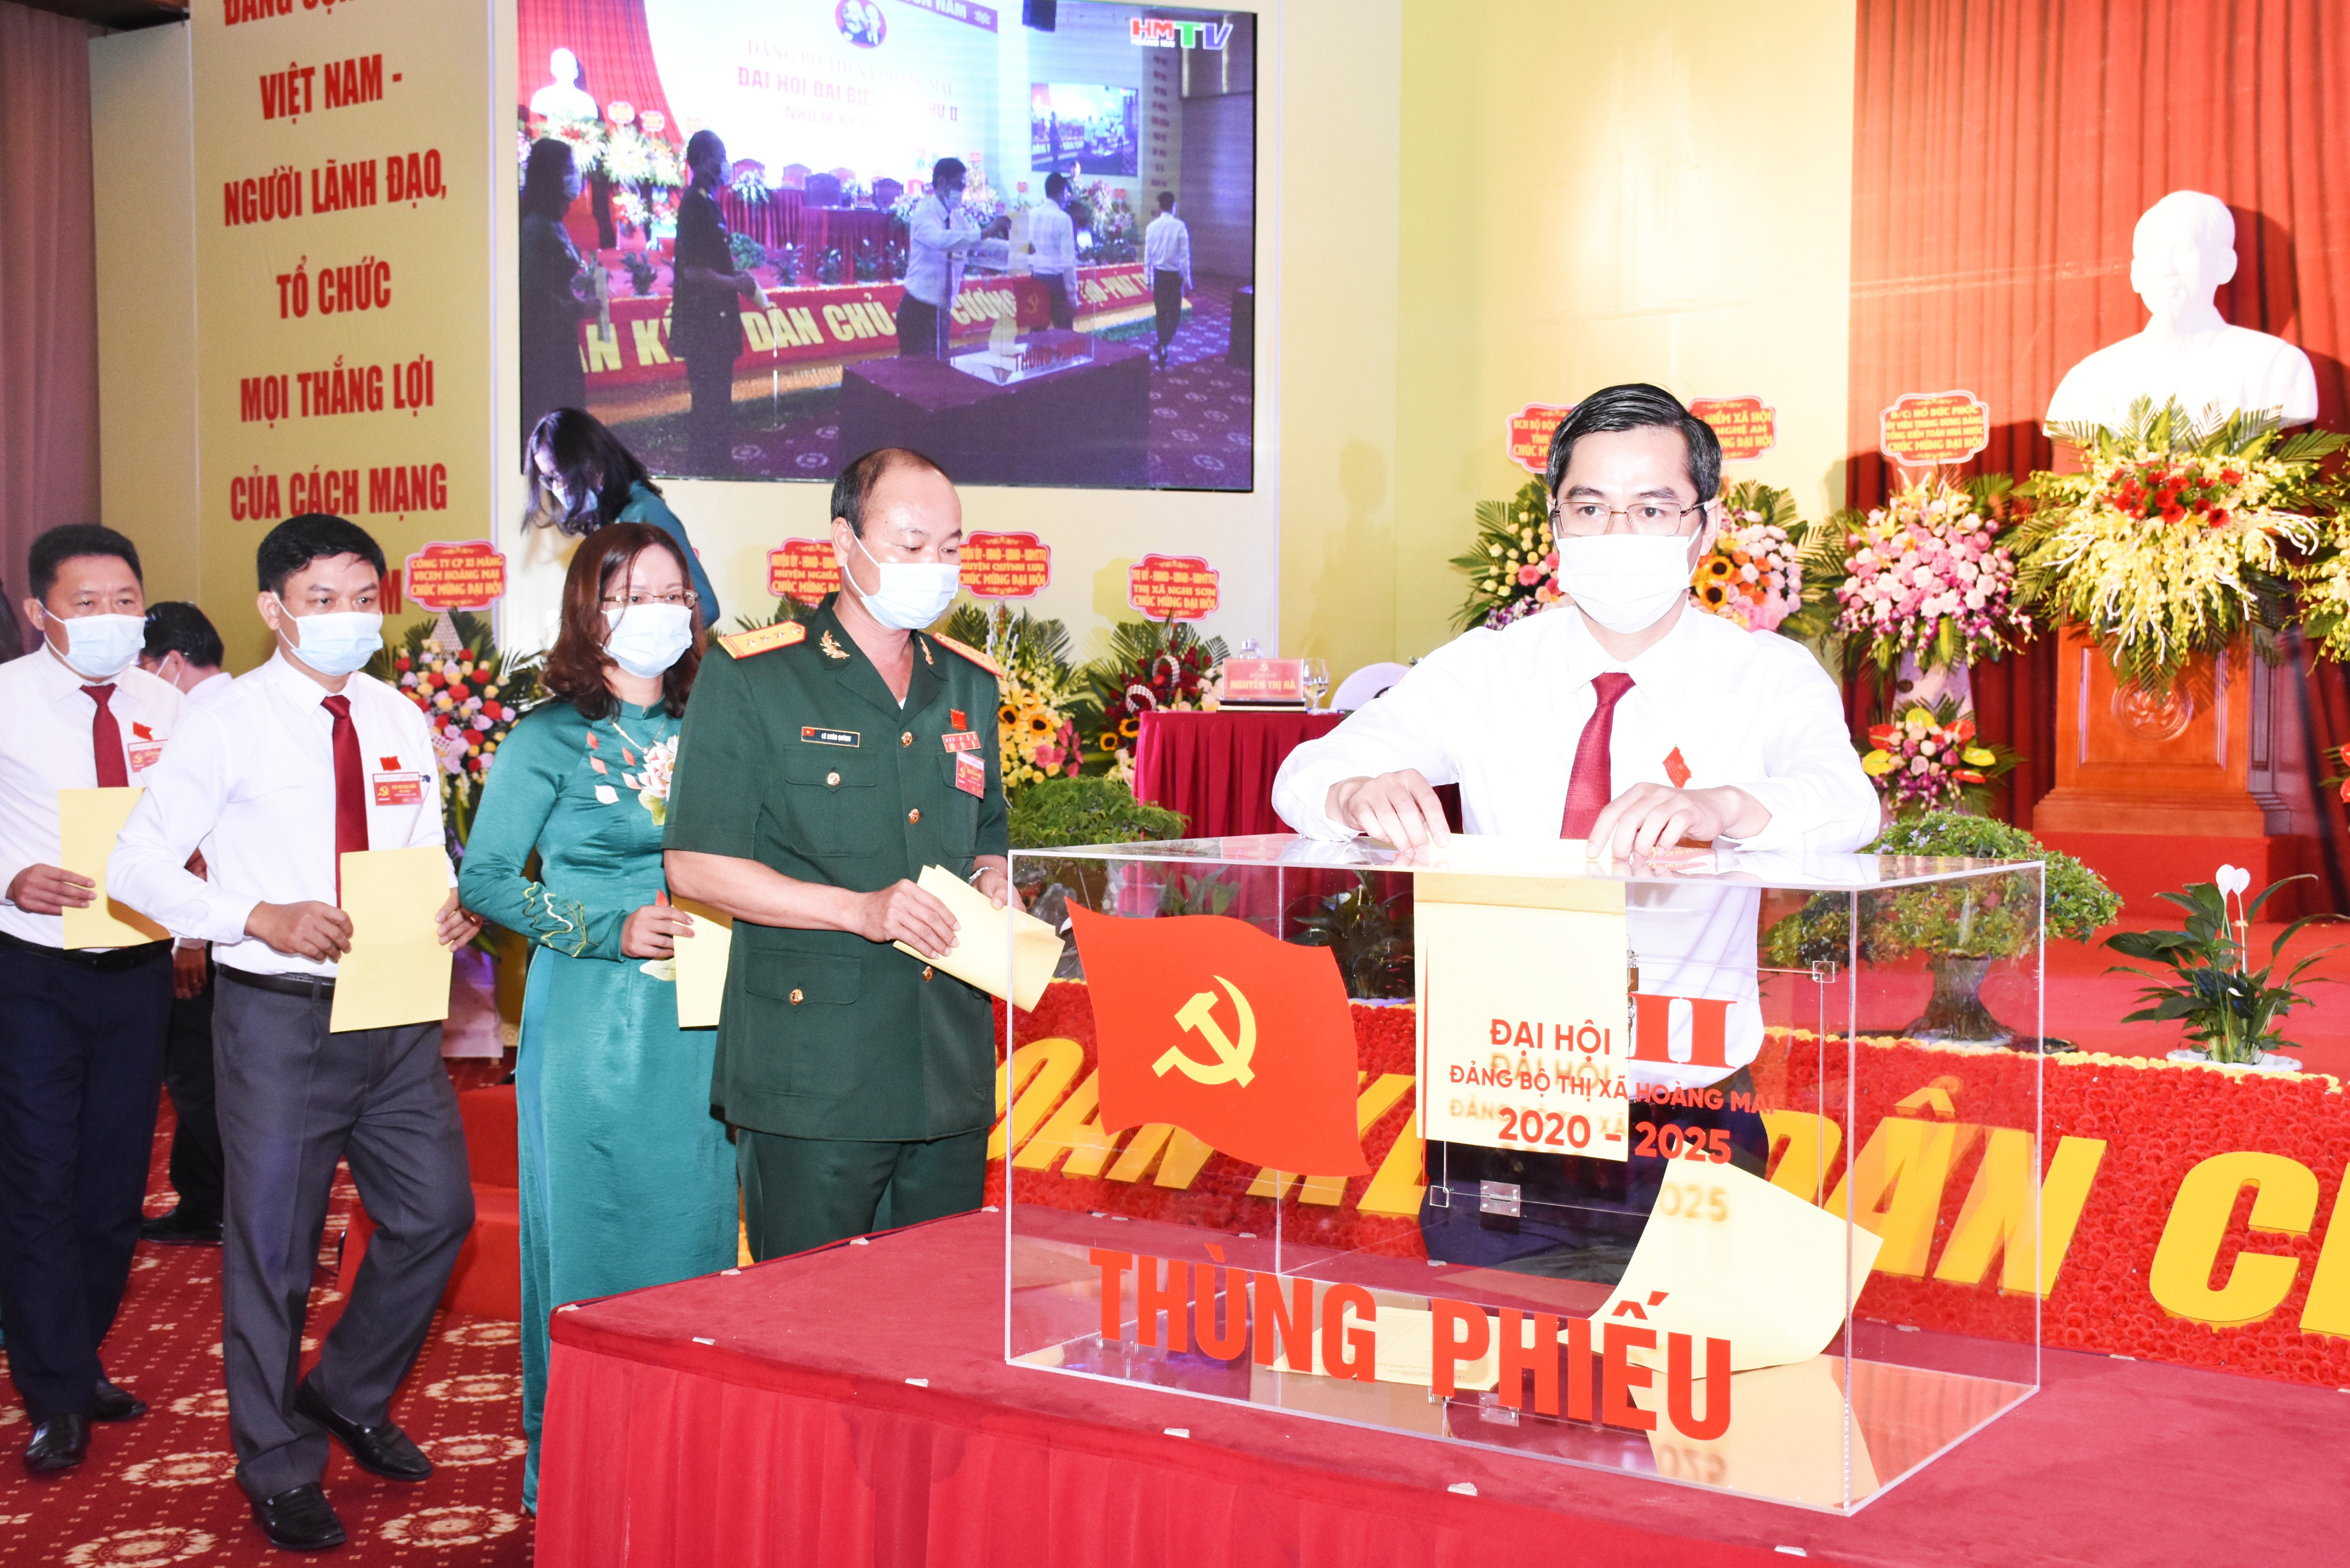 Các đại biểu bỏ phiếu bầu Ban Chấp hành Đảng bộ thị xã Hoàng Mai lần thứ II, nhiệm kỳ 2020-2025. Ảnh: Thanh Lê